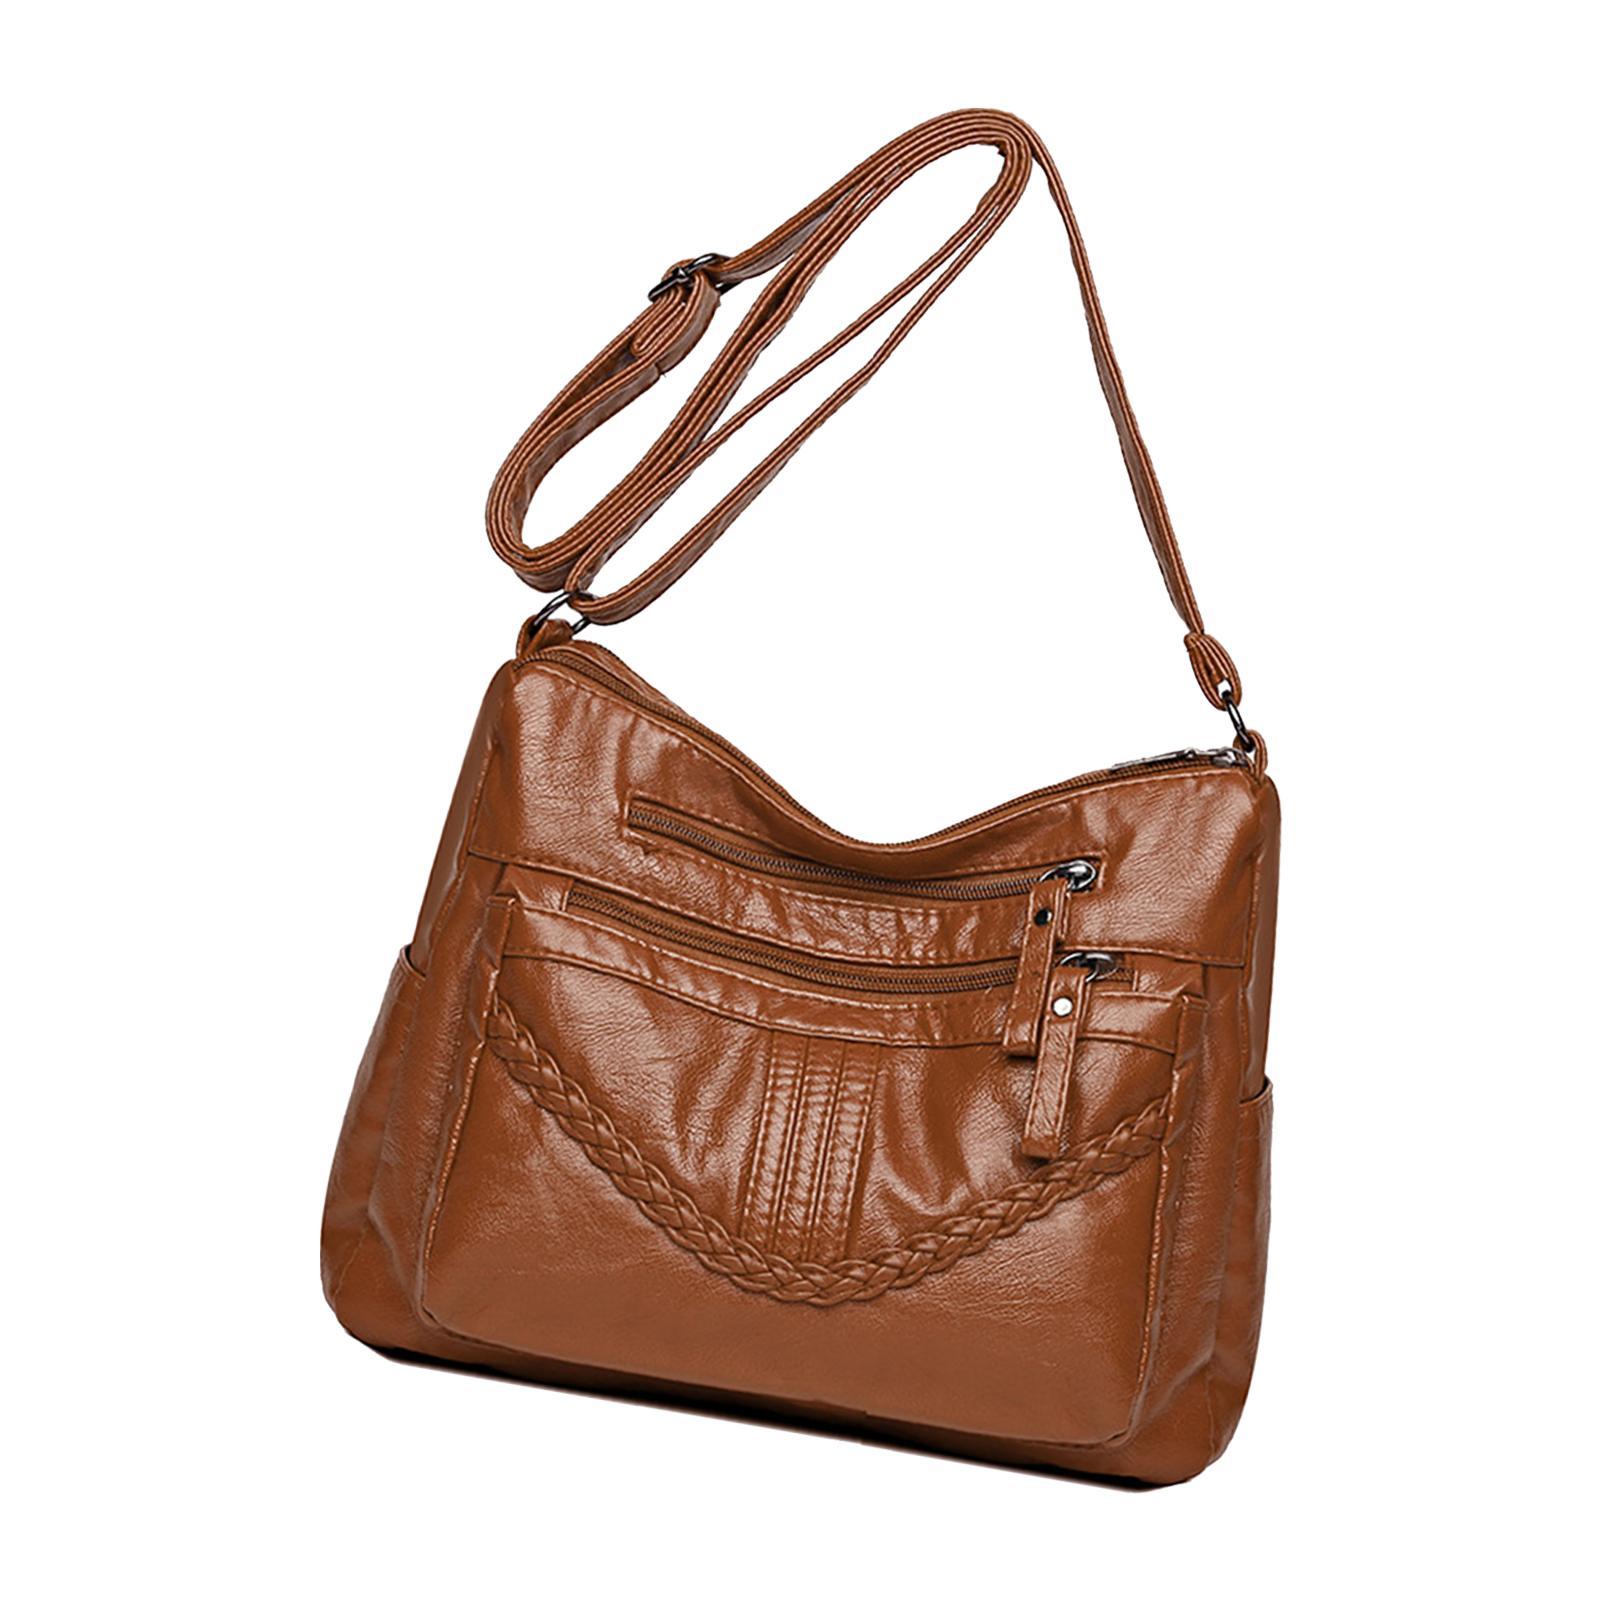 Fashion PU Leather Shoulder Bag Travel Bag Shopping Bag Adjustable